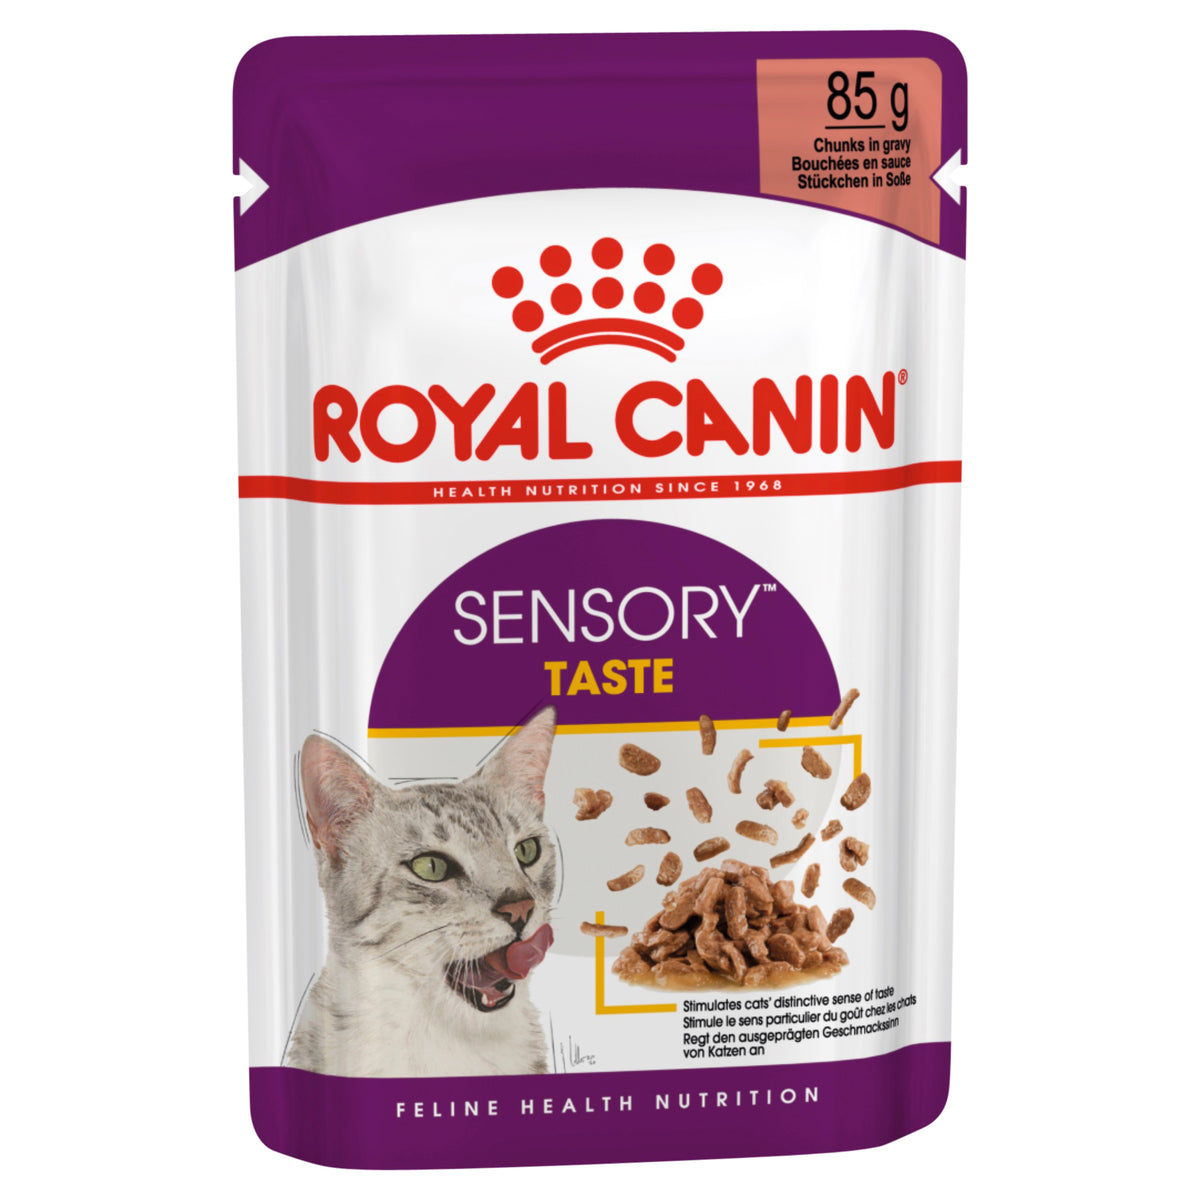 Royal Canin Sensory Taste Gravy Pouch